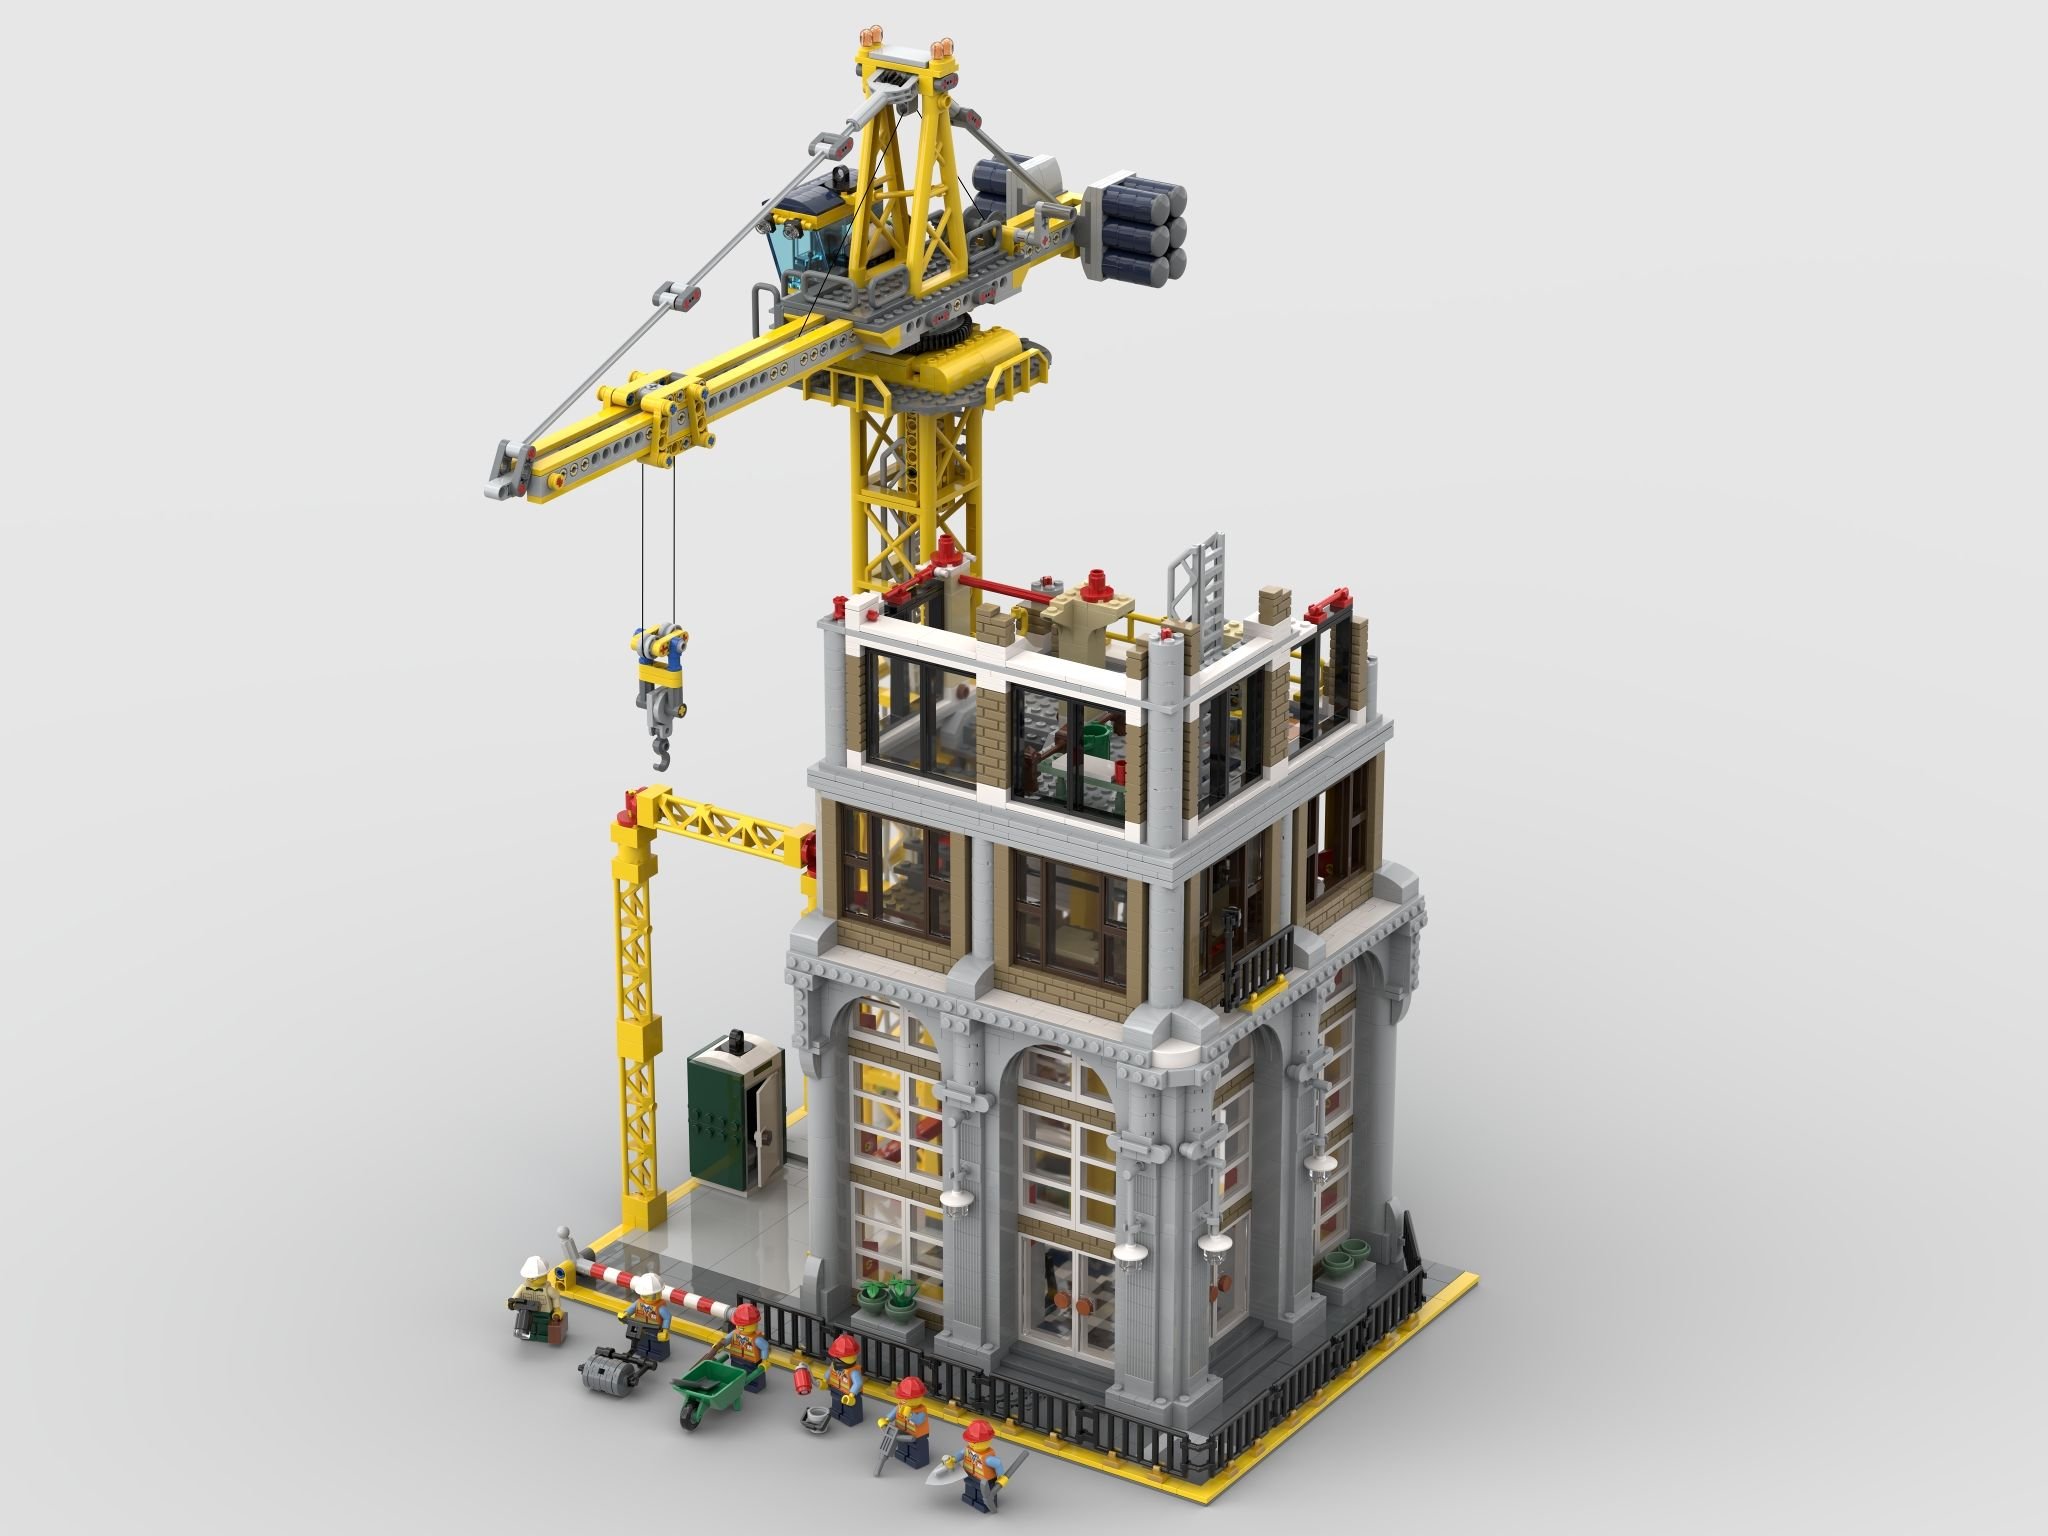 LEGO Bricklink 910008 Baustelle aus Modulen LEGO_910008_pre.jpg